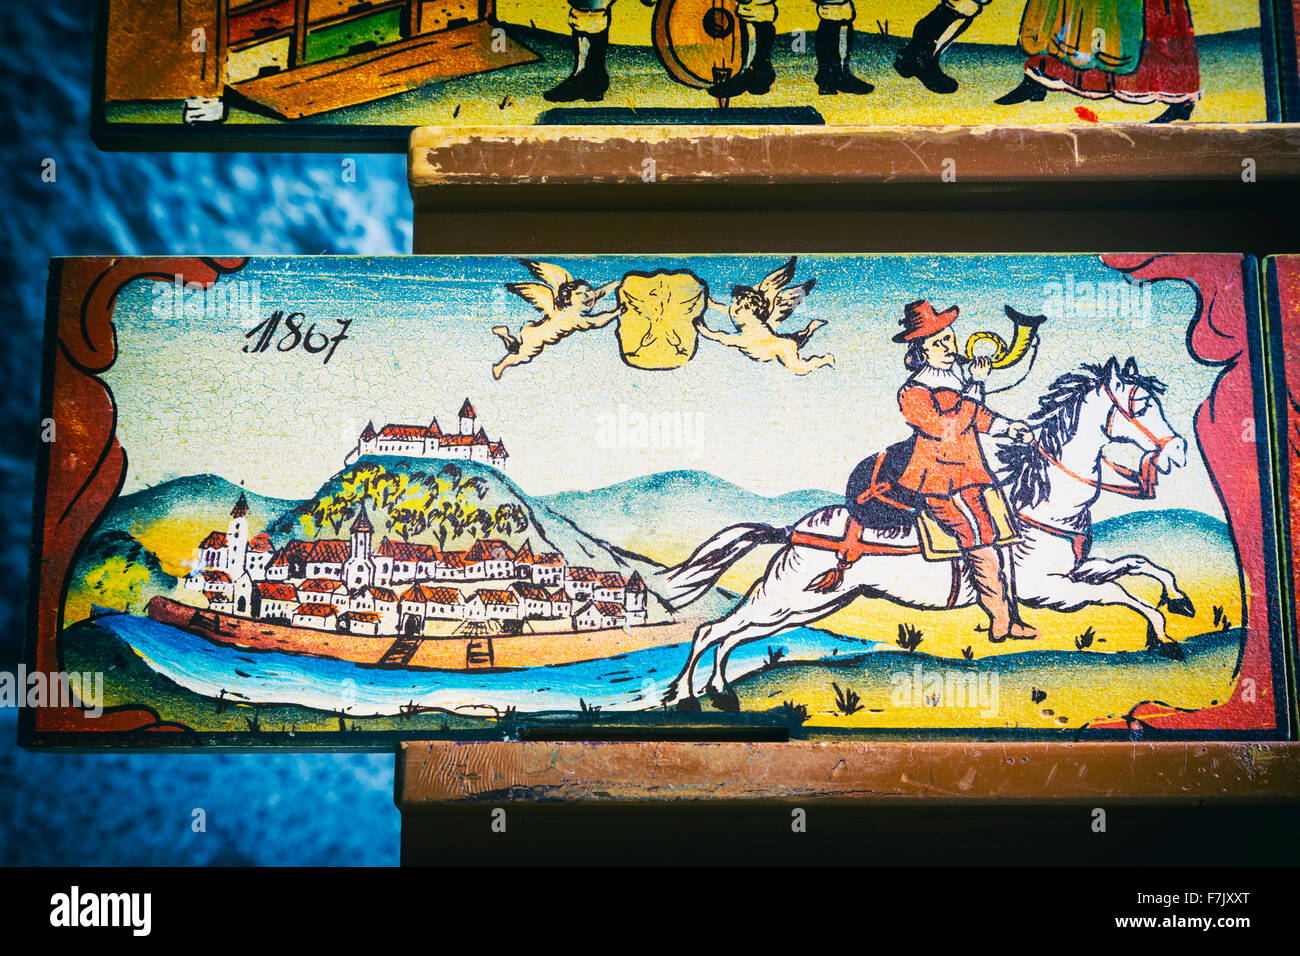 Bienenstock Paneele, Slowenien. Kopien der Originale sind ein Souvenir-Artikel mit Besuchern. Ursprünglich, dekoriert die Paneele Bienenstöcke. Stockfoto